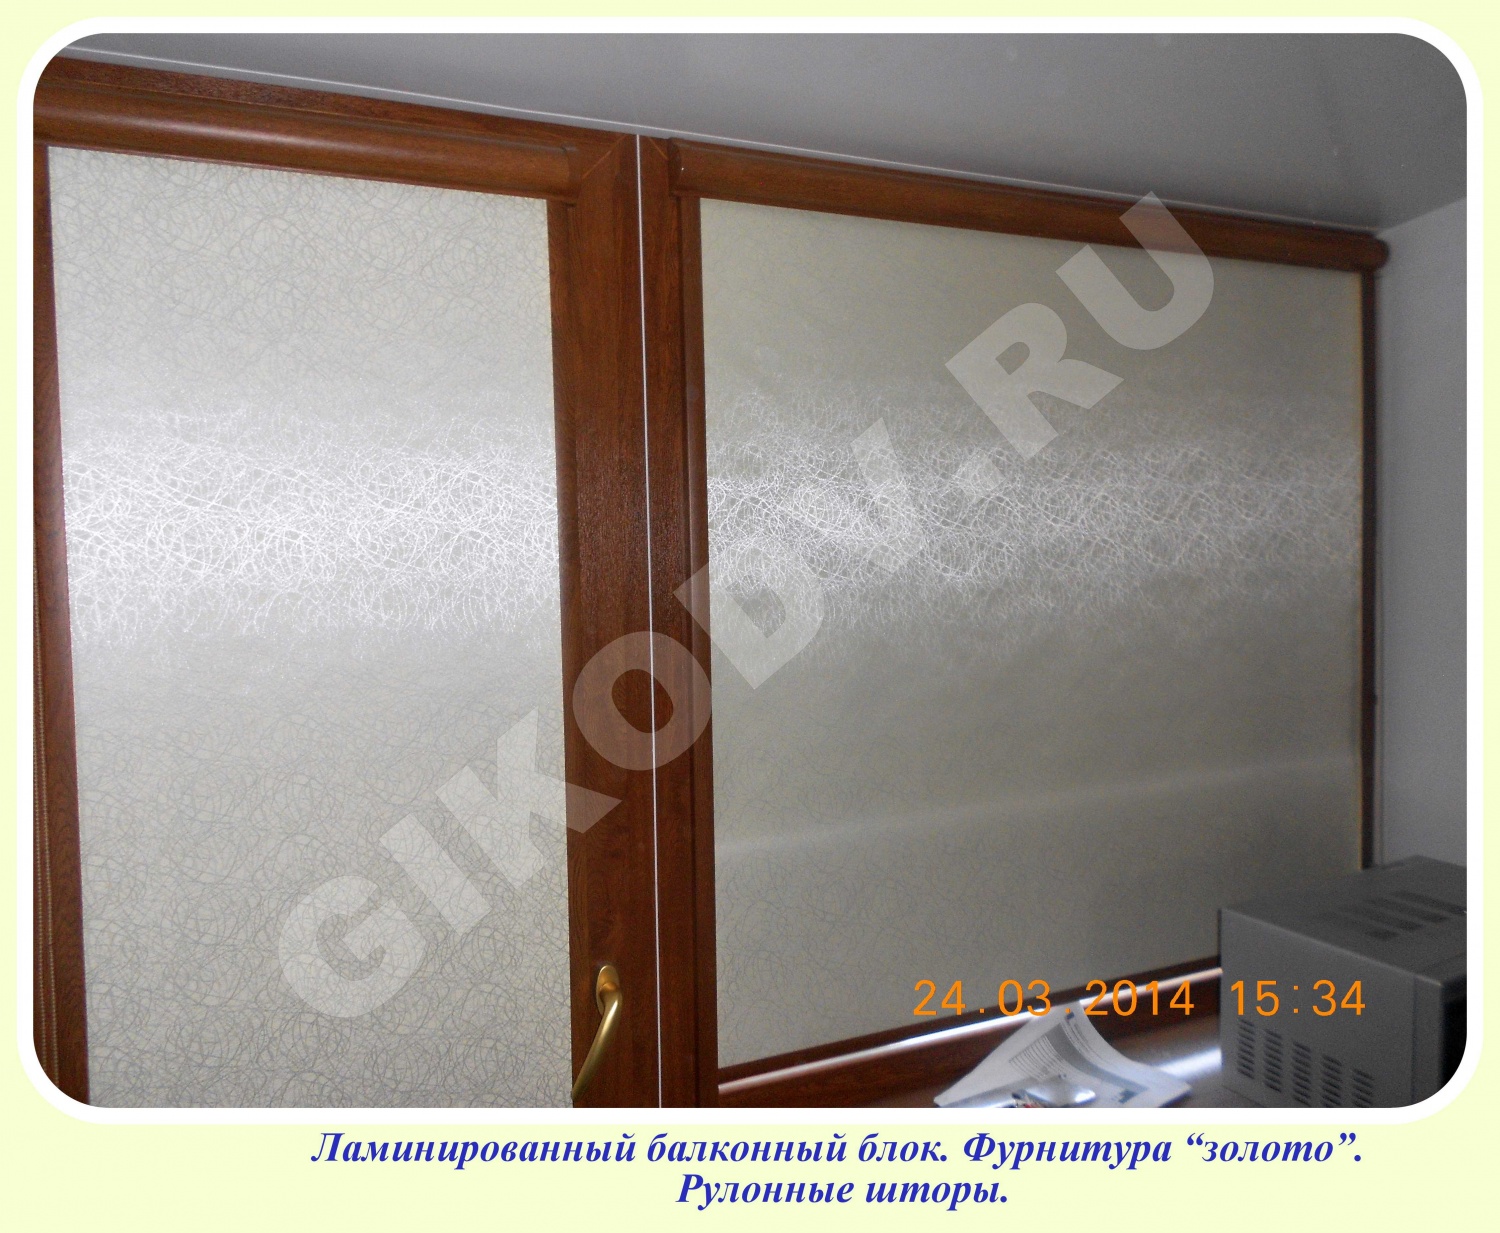 Изготовление, установка и монтаж пластиковых окон и дверей в Хабаровске